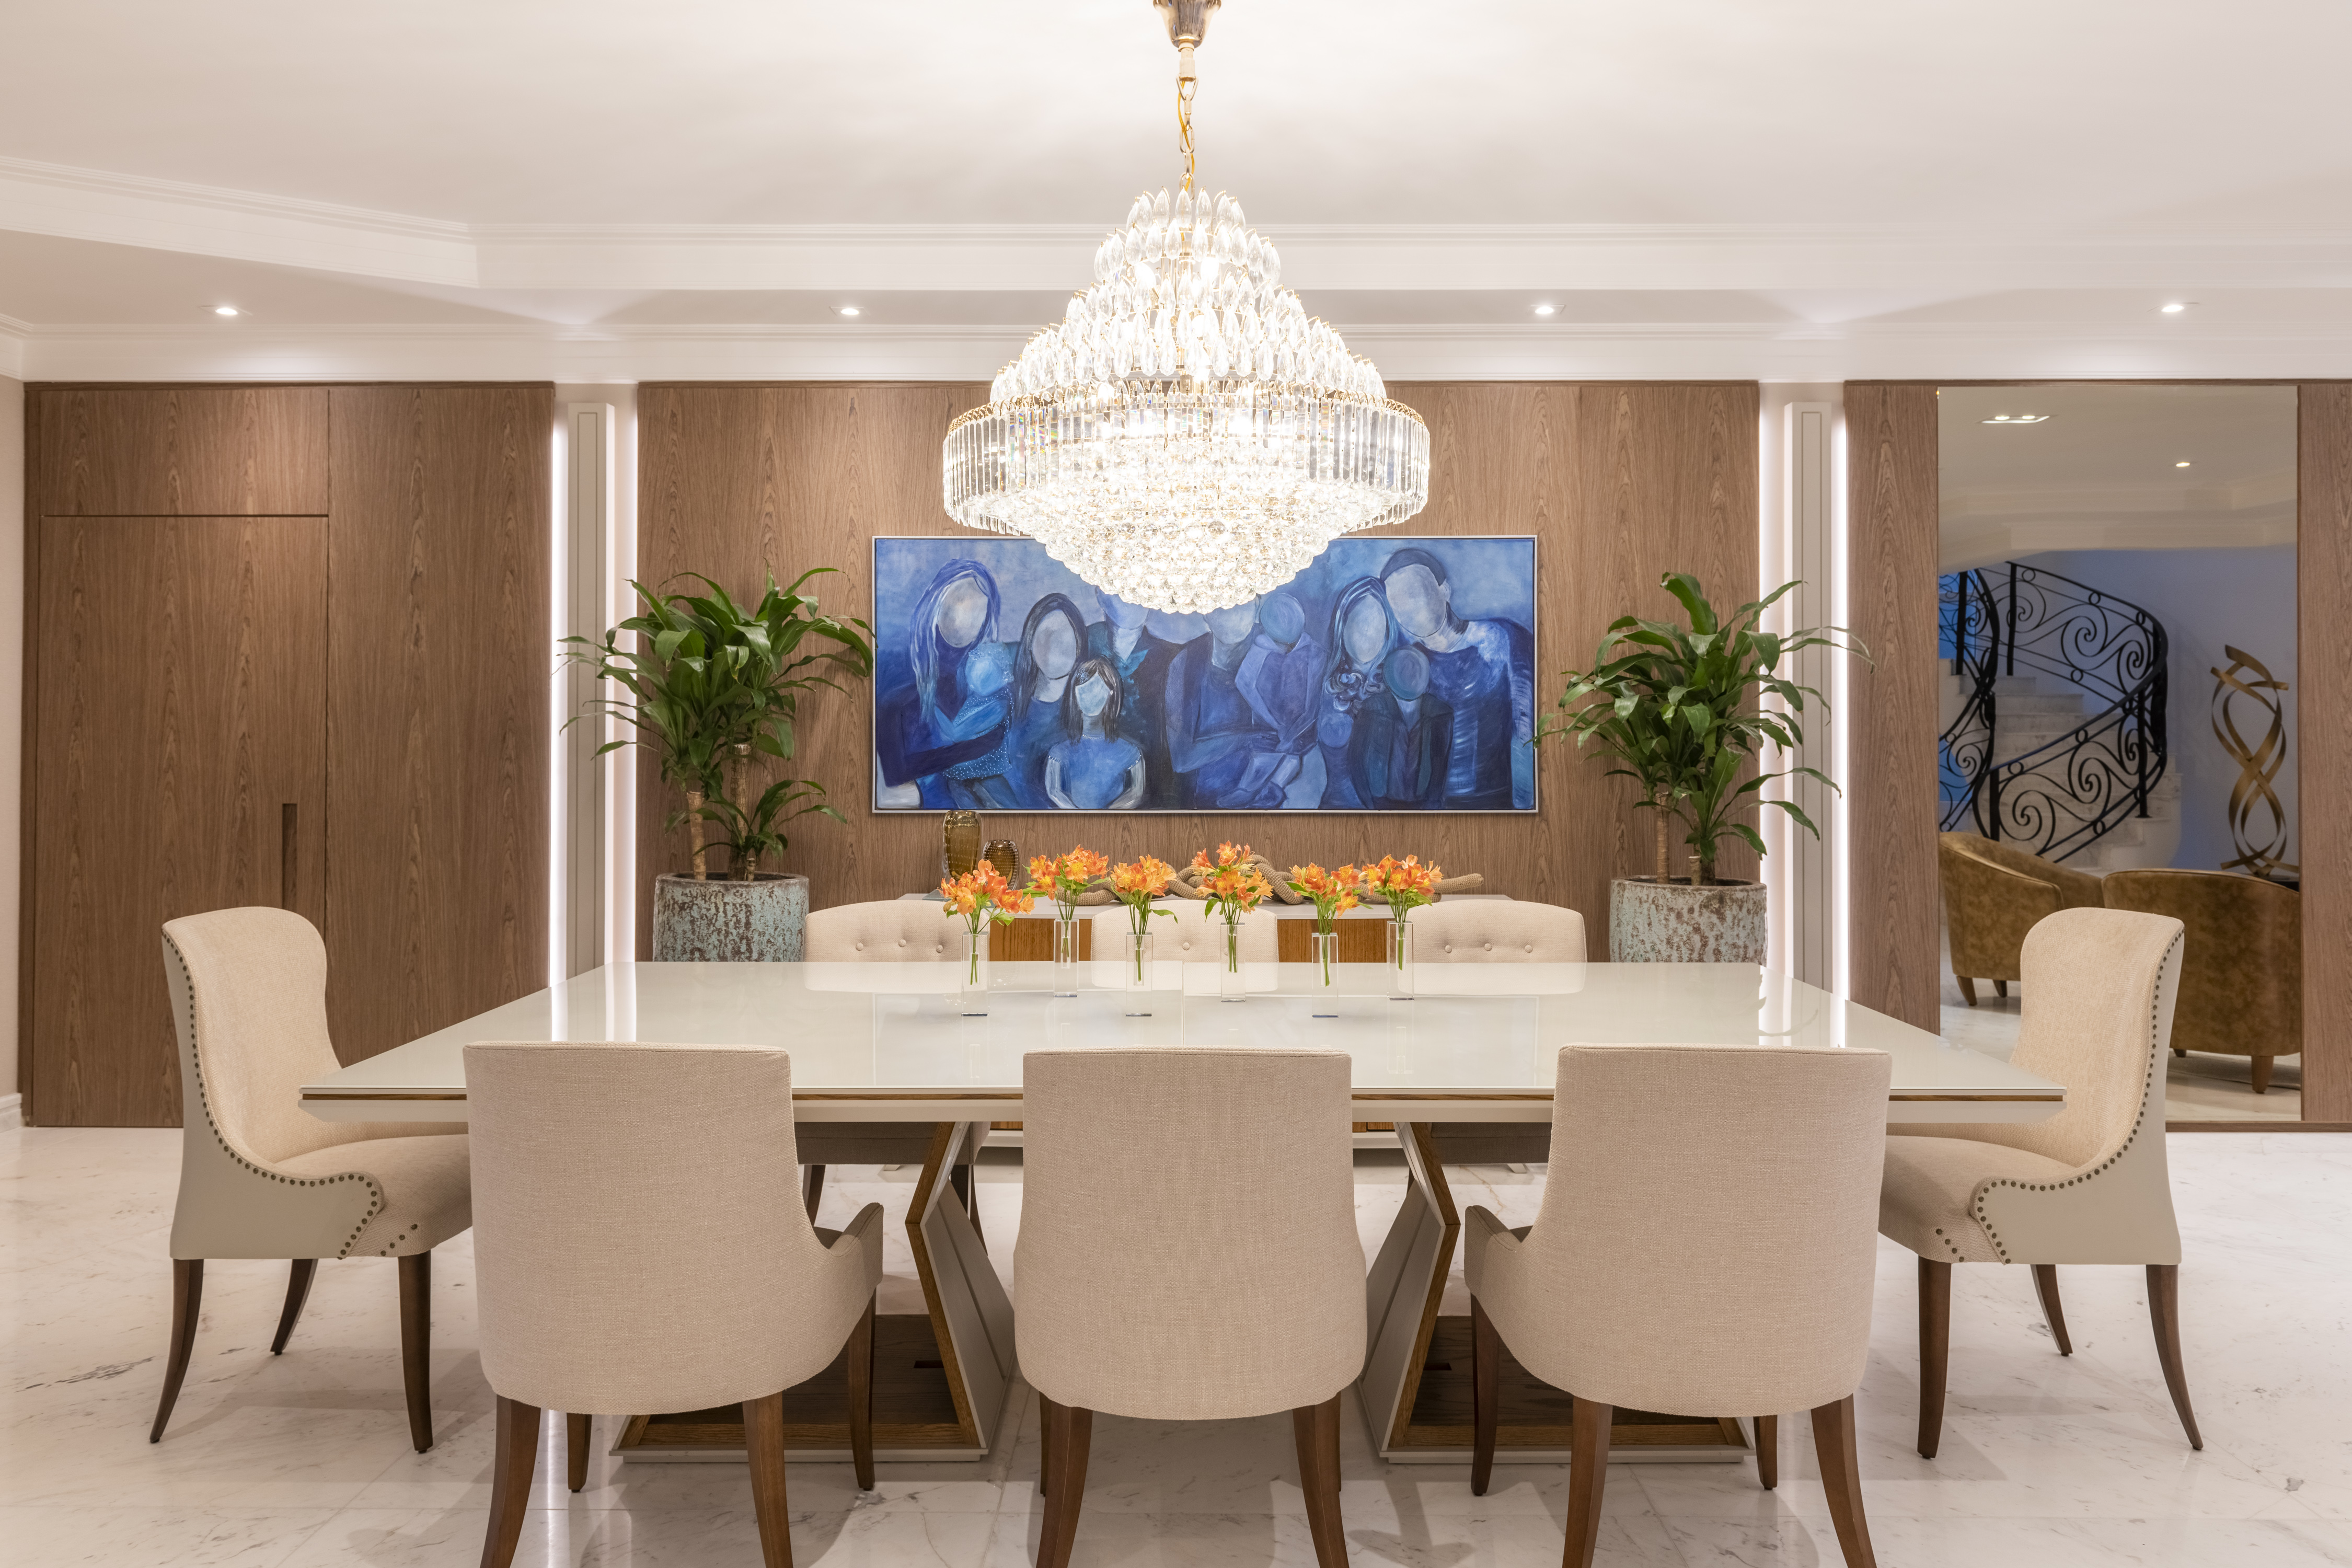 Casa área social moderna toques clássicos decoração Barbara Kahhale alphaville sala jantar mesa cadeira quadro lustre cristal